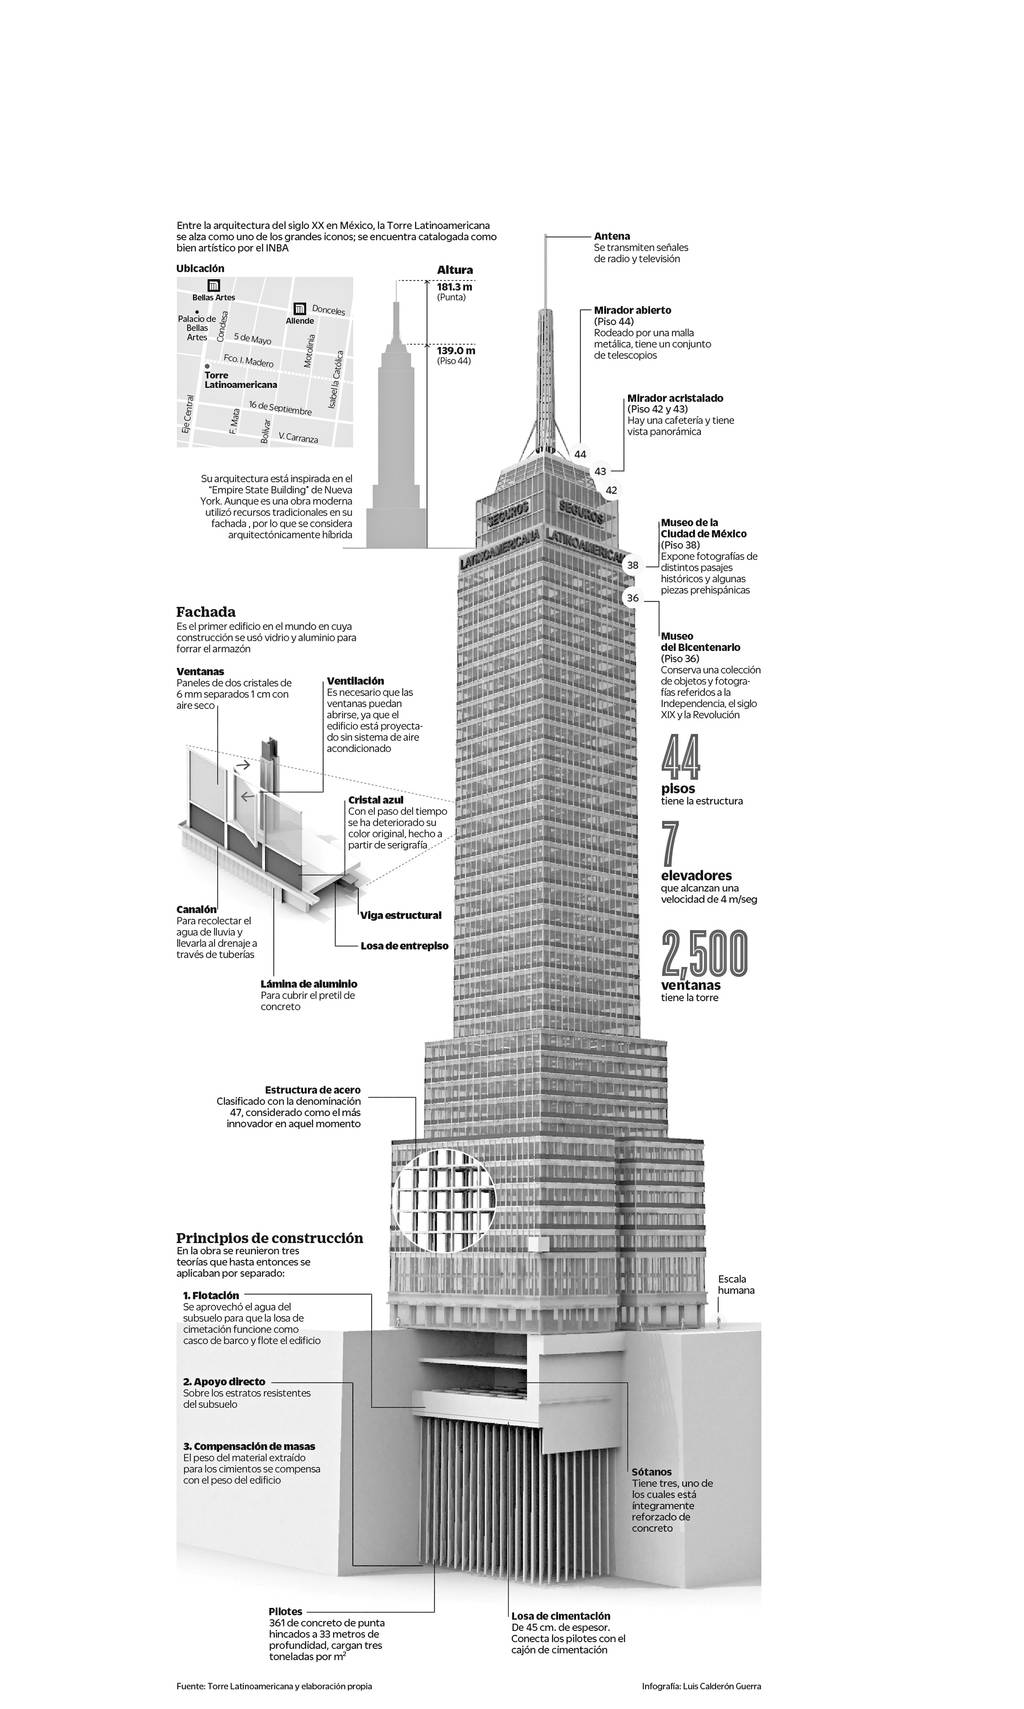 Atractivo. El mirador de la Torre Latinoamericana recibe a 500 mil visitantes al año.